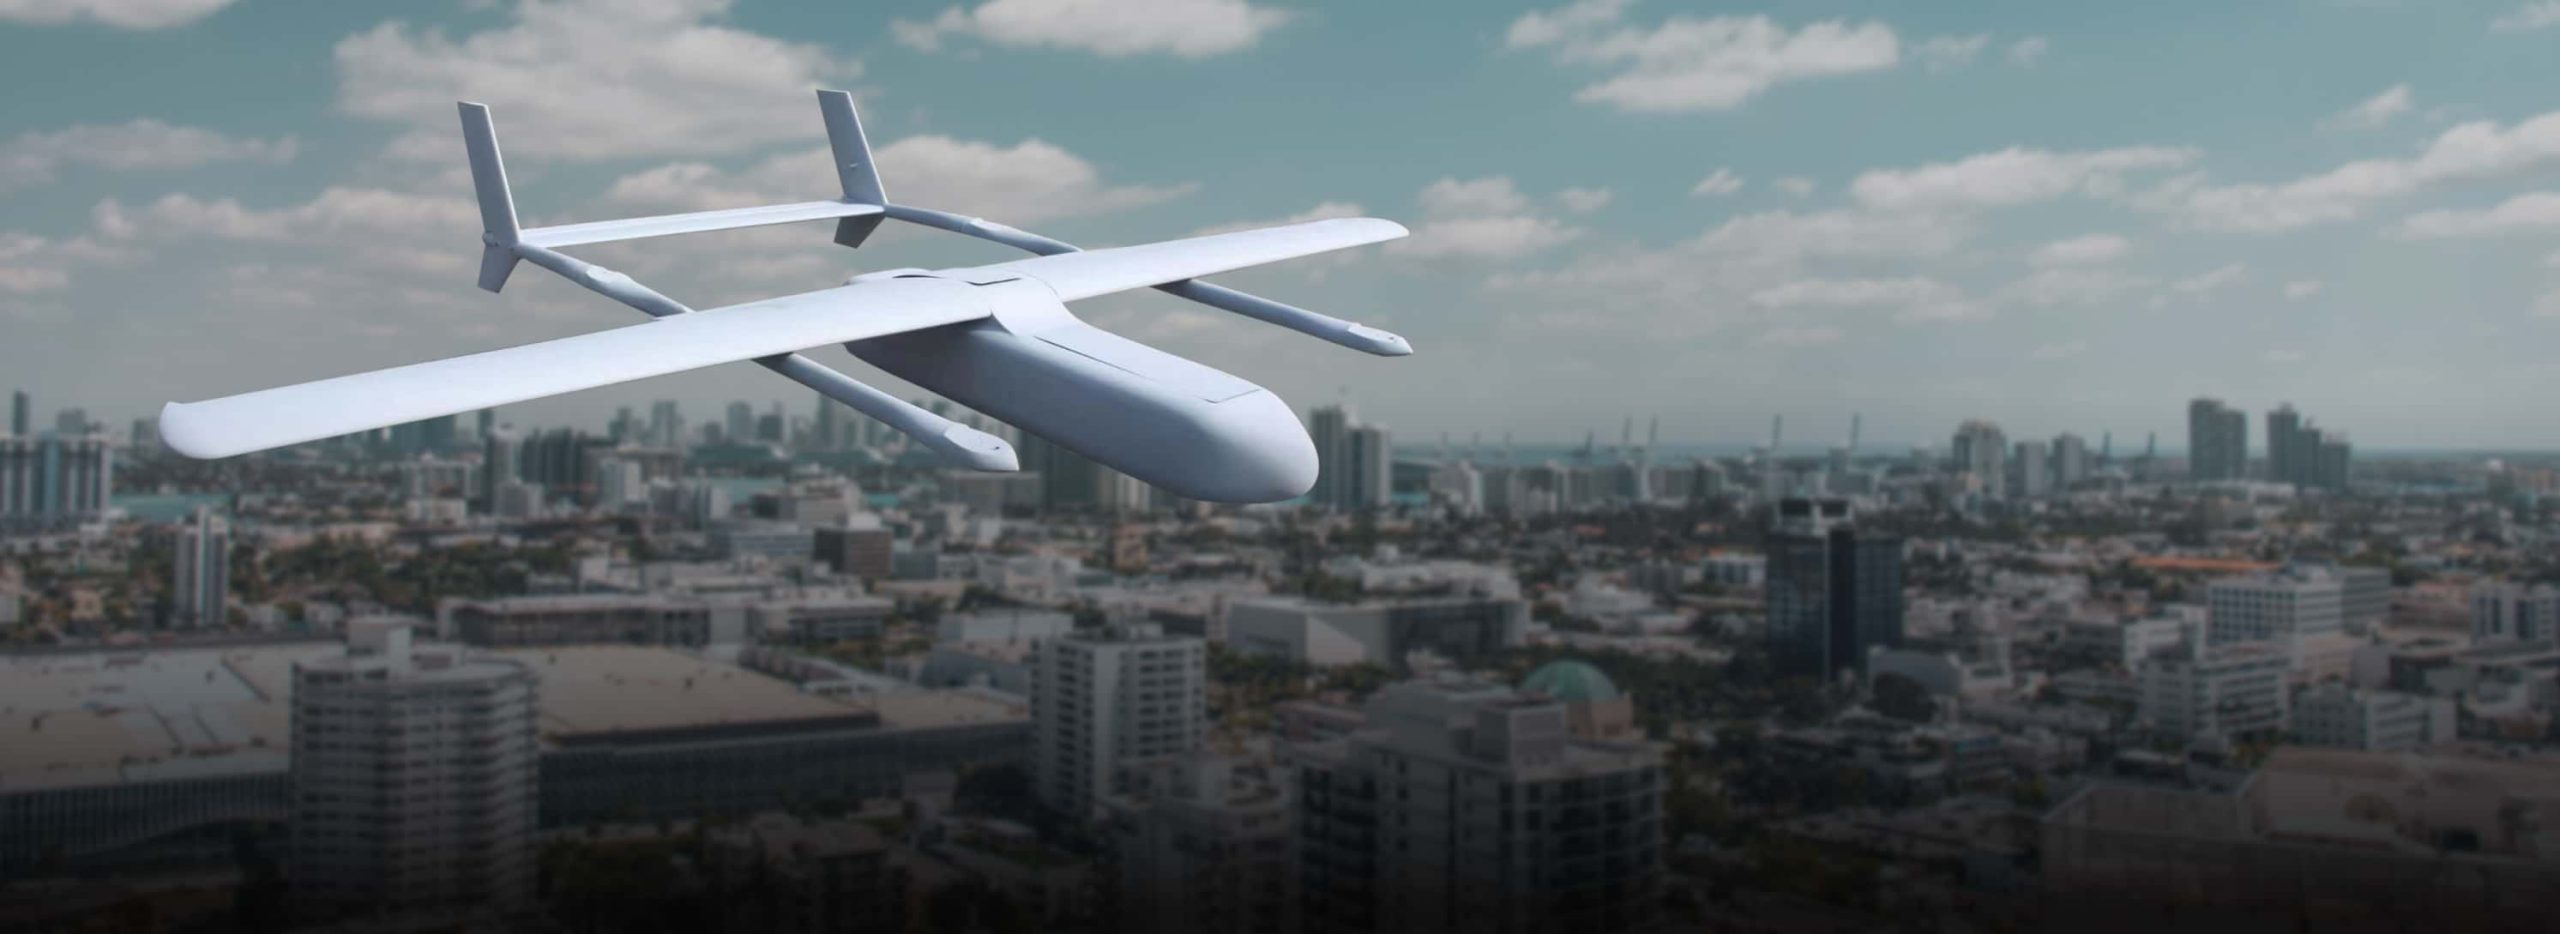 eqviv logistic drone delivering parcels